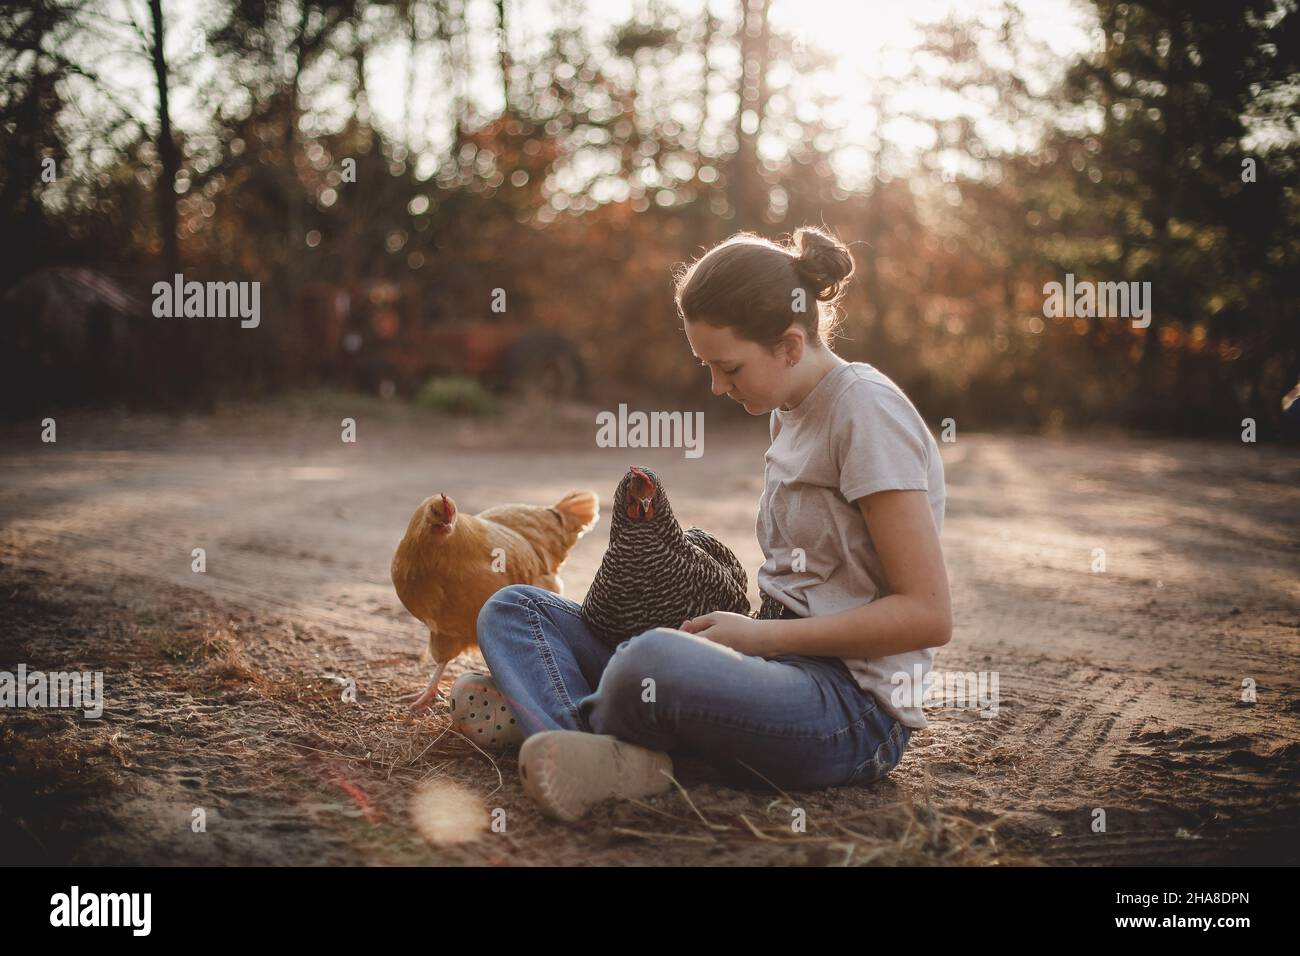 Fille assise sur une allée de terre avec des poulets Banque D'Images